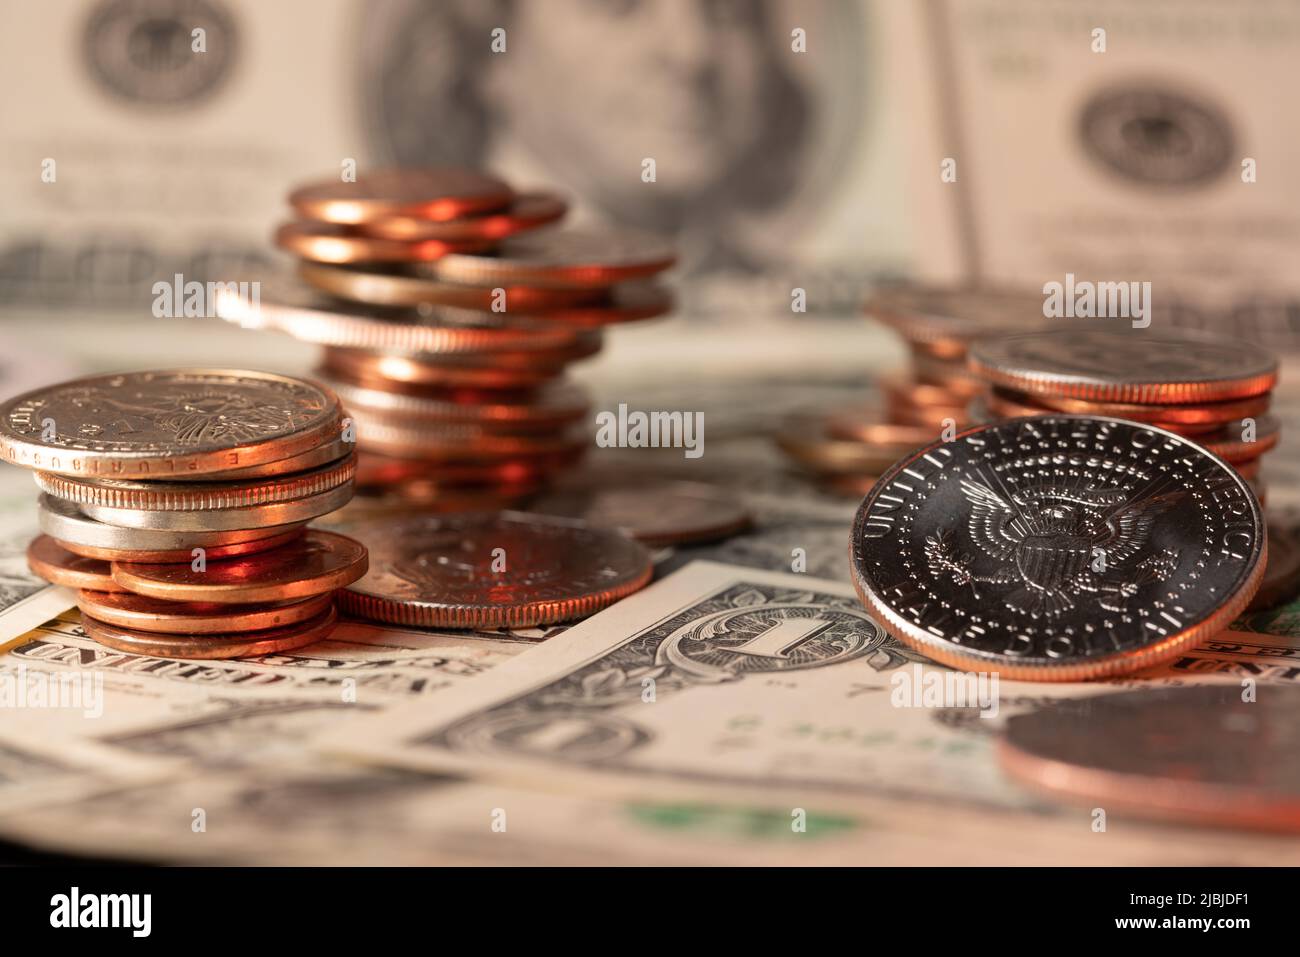 Angehäuft Dollar-Münzen, Banknoten im Hintergrund. Halber Dollar auf der rechten Seite. USD-Währung der Vereinigten Staaten von Amerika. Tipp und Gehaltsscheck Konz Stockfoto